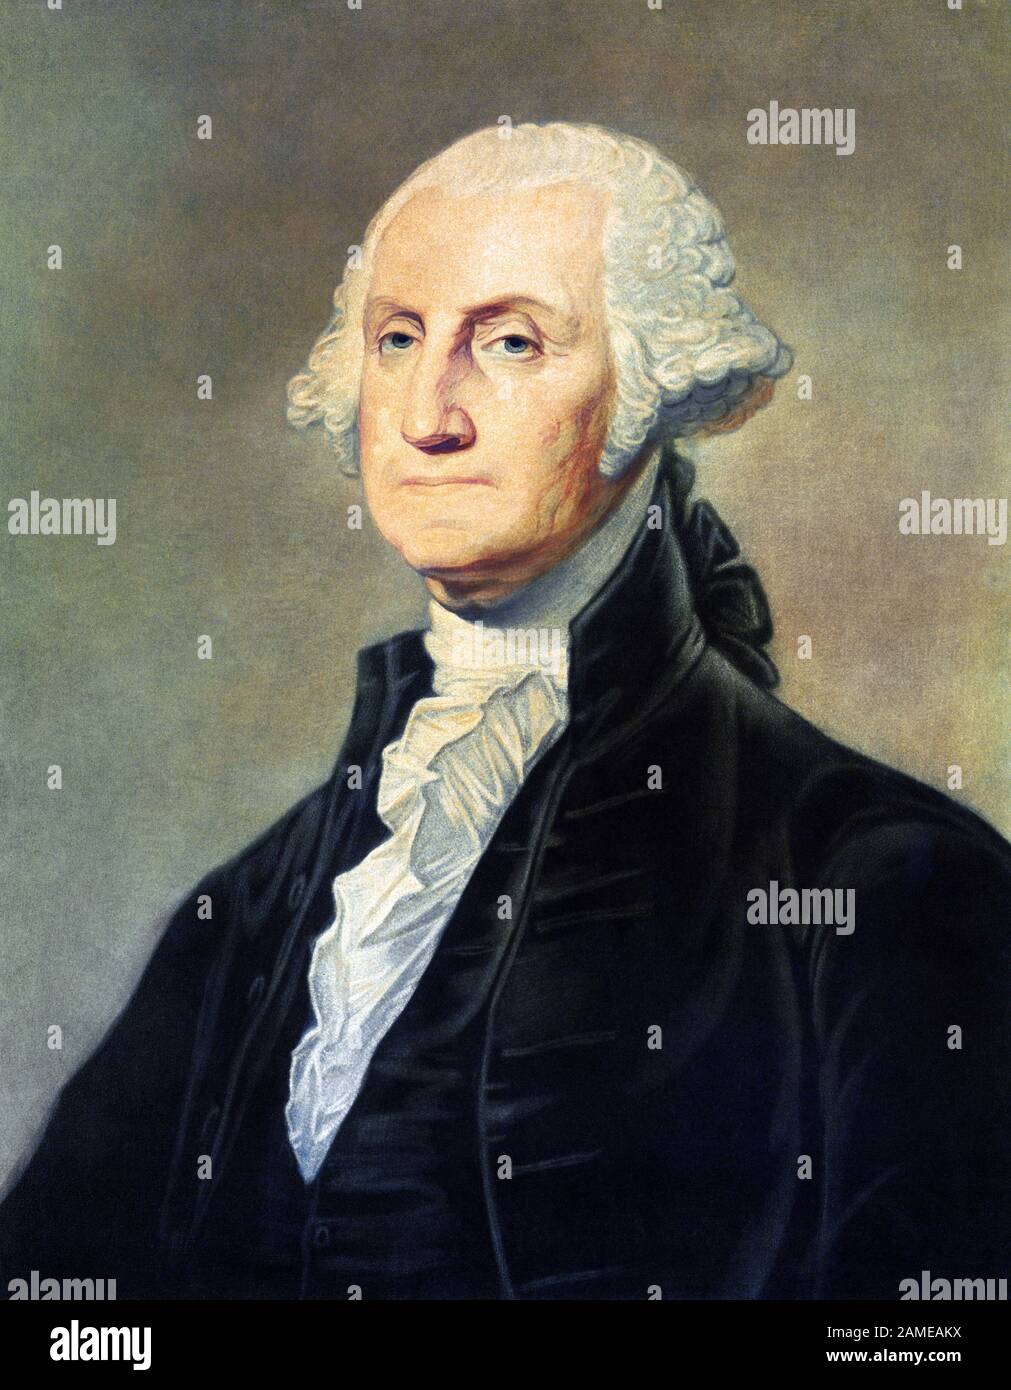 Portrait vintage de George Washington (1732 - 1799) – Commandant de l'Armée continentale dans la guerre révolutionnaire américaine / Guerre d'indépendance (1775 - 1783) et le premier Président des États-Unis (1789 - 1797). Imprimer vers 1813 par Freeman de Philadelphie. Banque D'Images